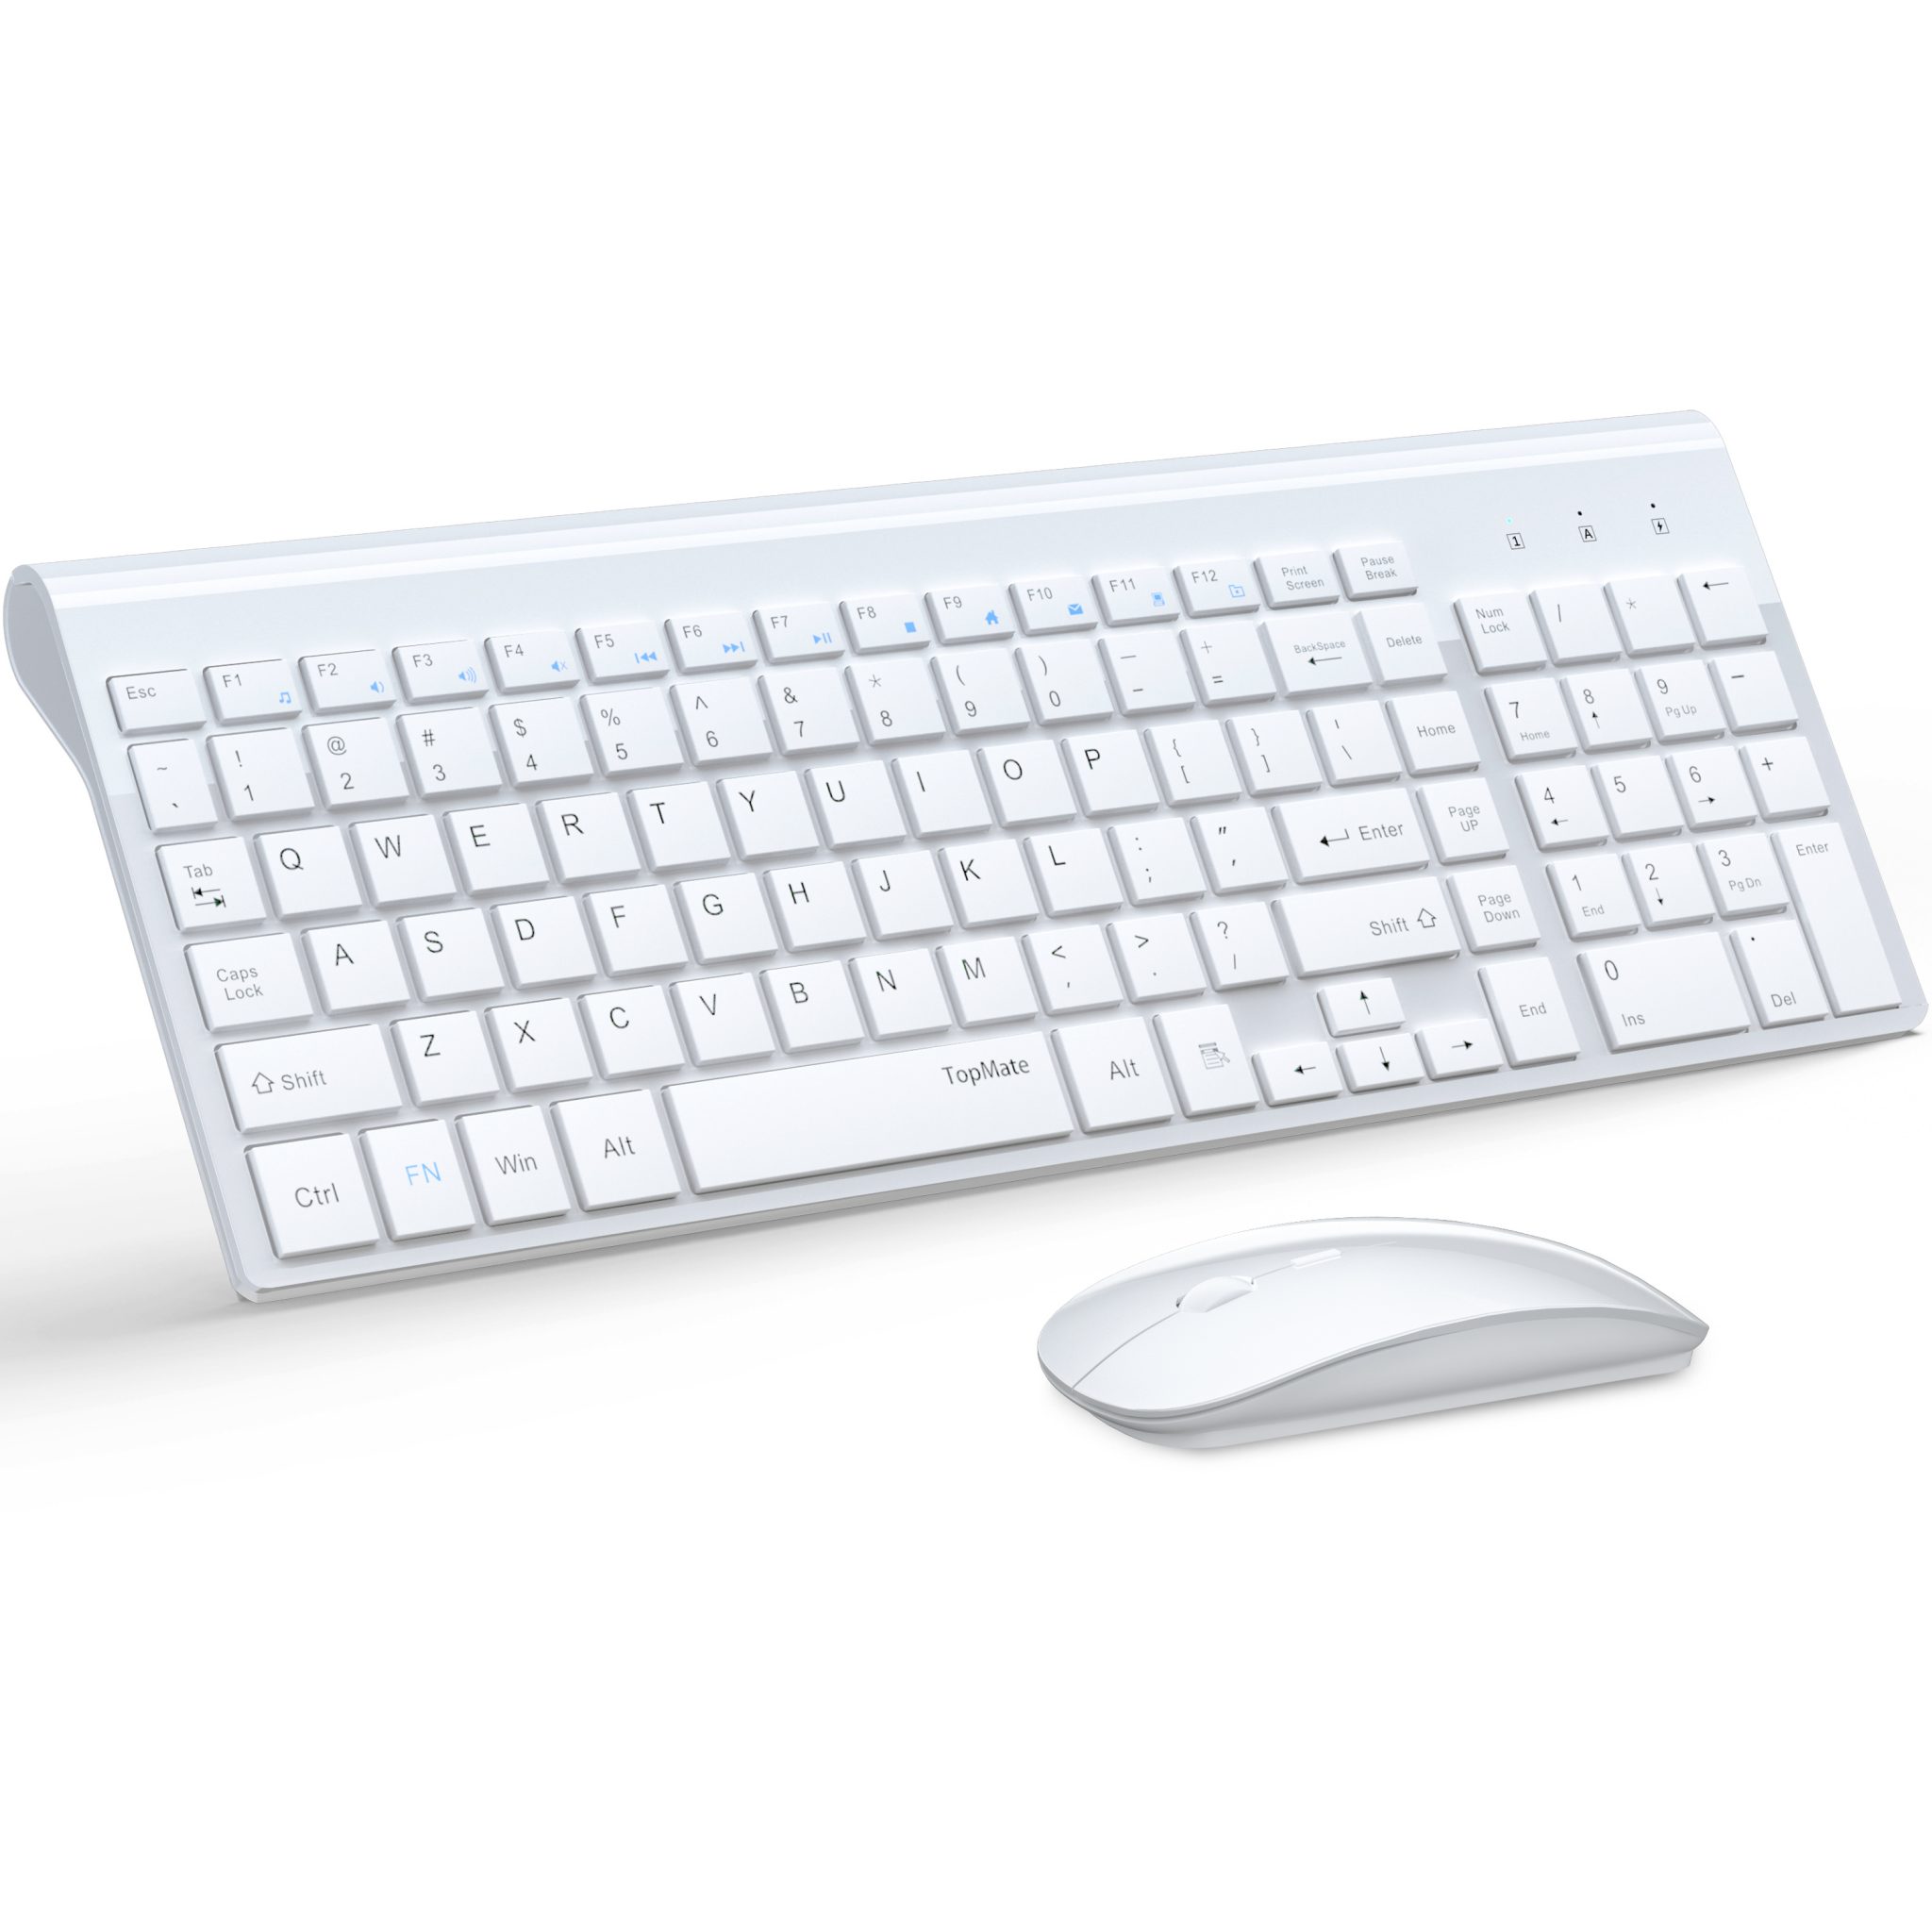 Combo de teclado y mouse inalámbrico - Mouse y teclado delgado de tamaño  completo, inalámbrico, con teclado numérico 2.4G conexión estable, DPI